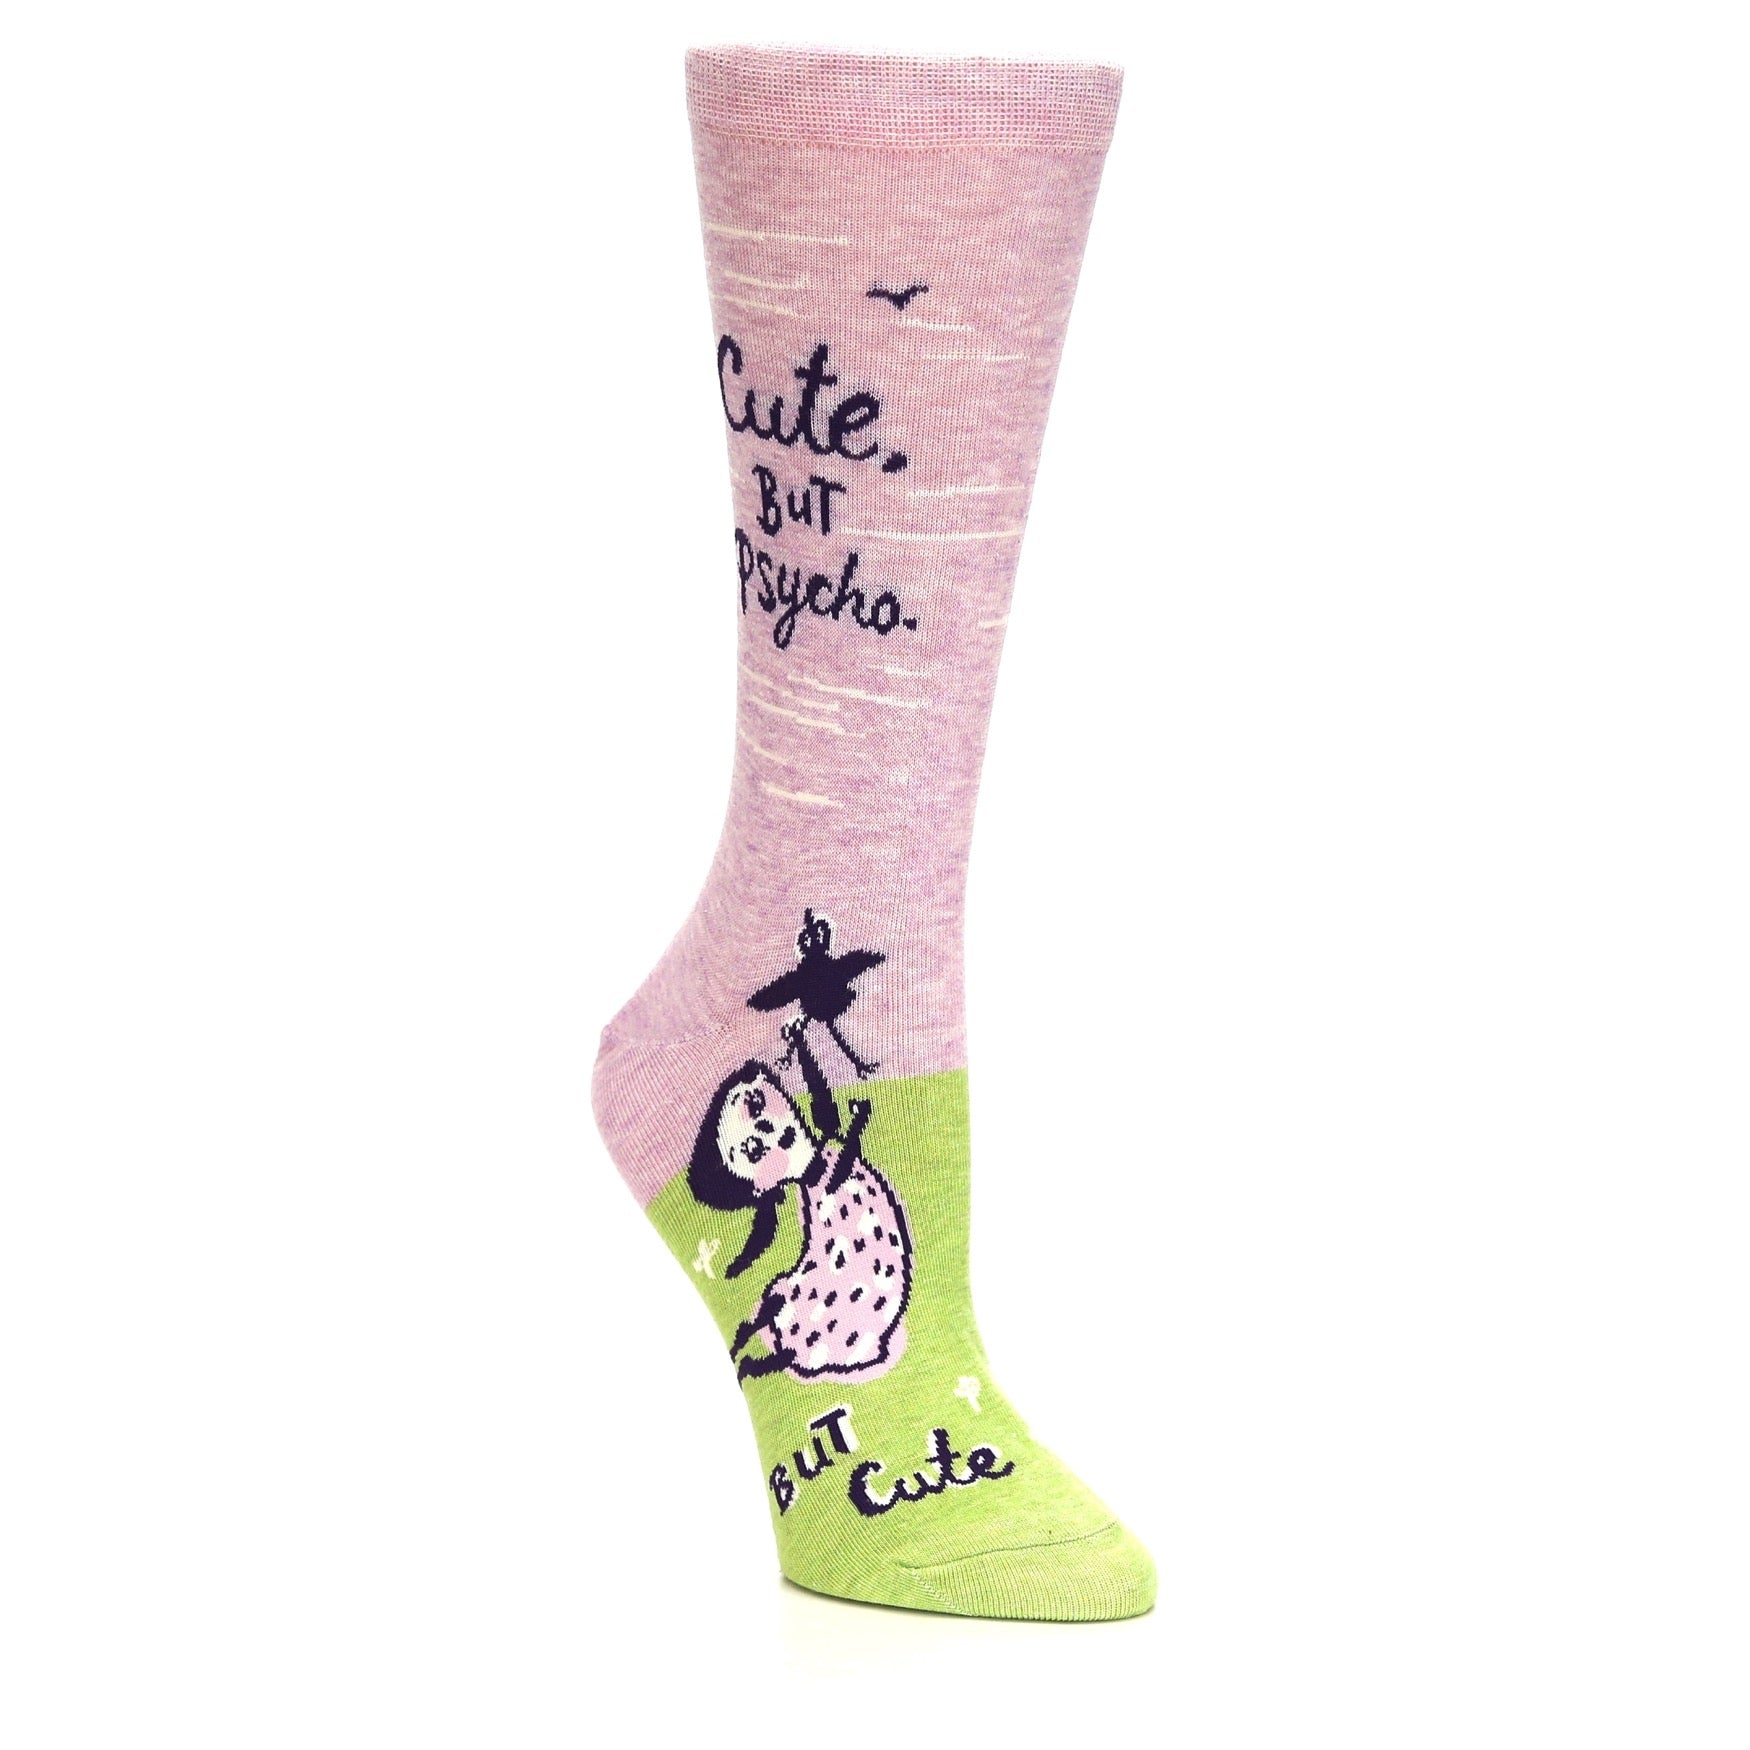 Cute But Psycho Socks - Women's Novelty Socks